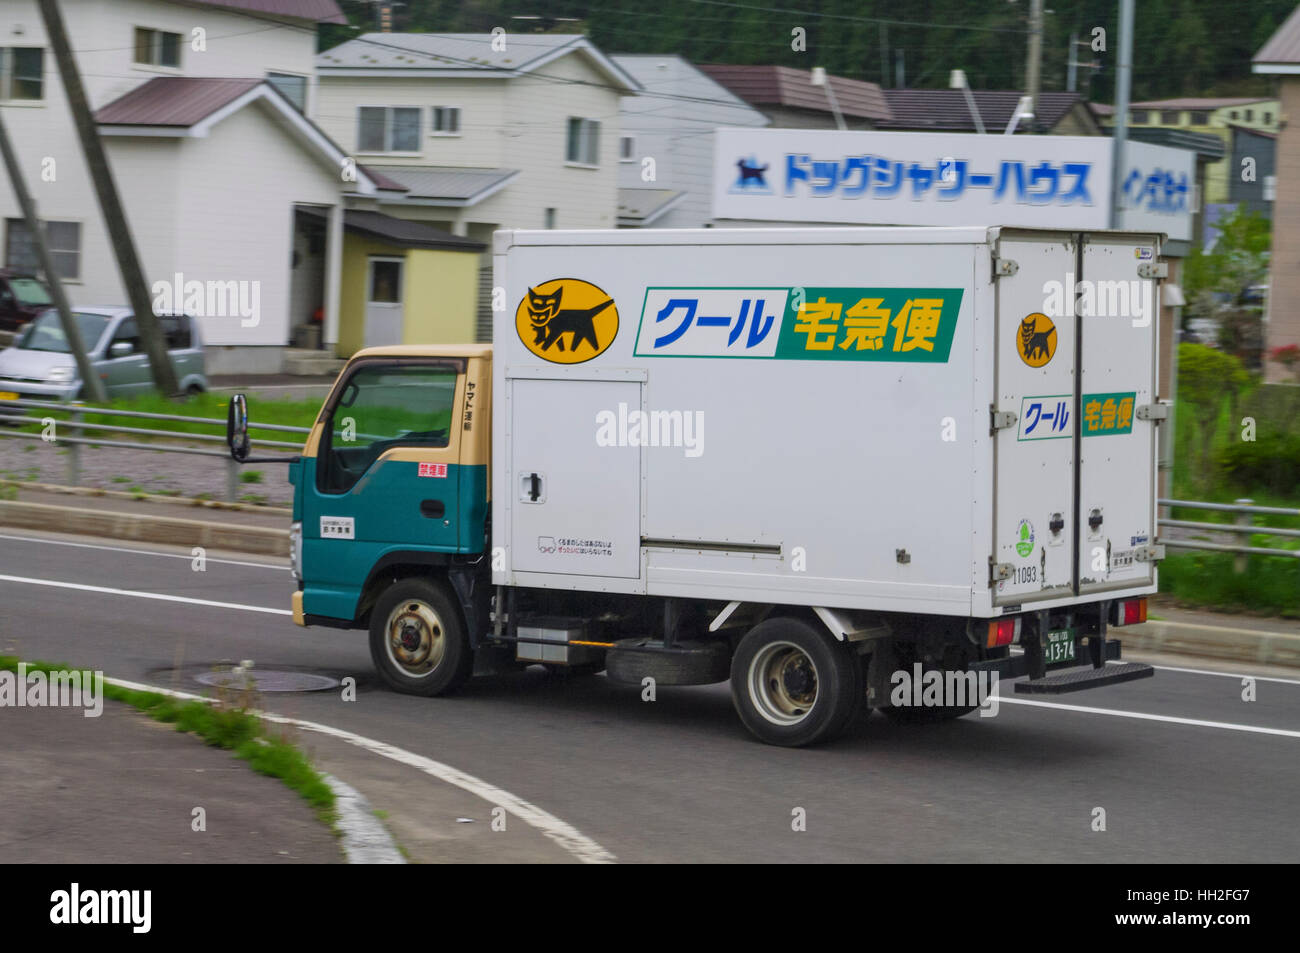 Yamato pequeño camión de transporte con la empresa "kuro neko" (black cat) El logotipo. Hokkaido, Japón. Foto de stock